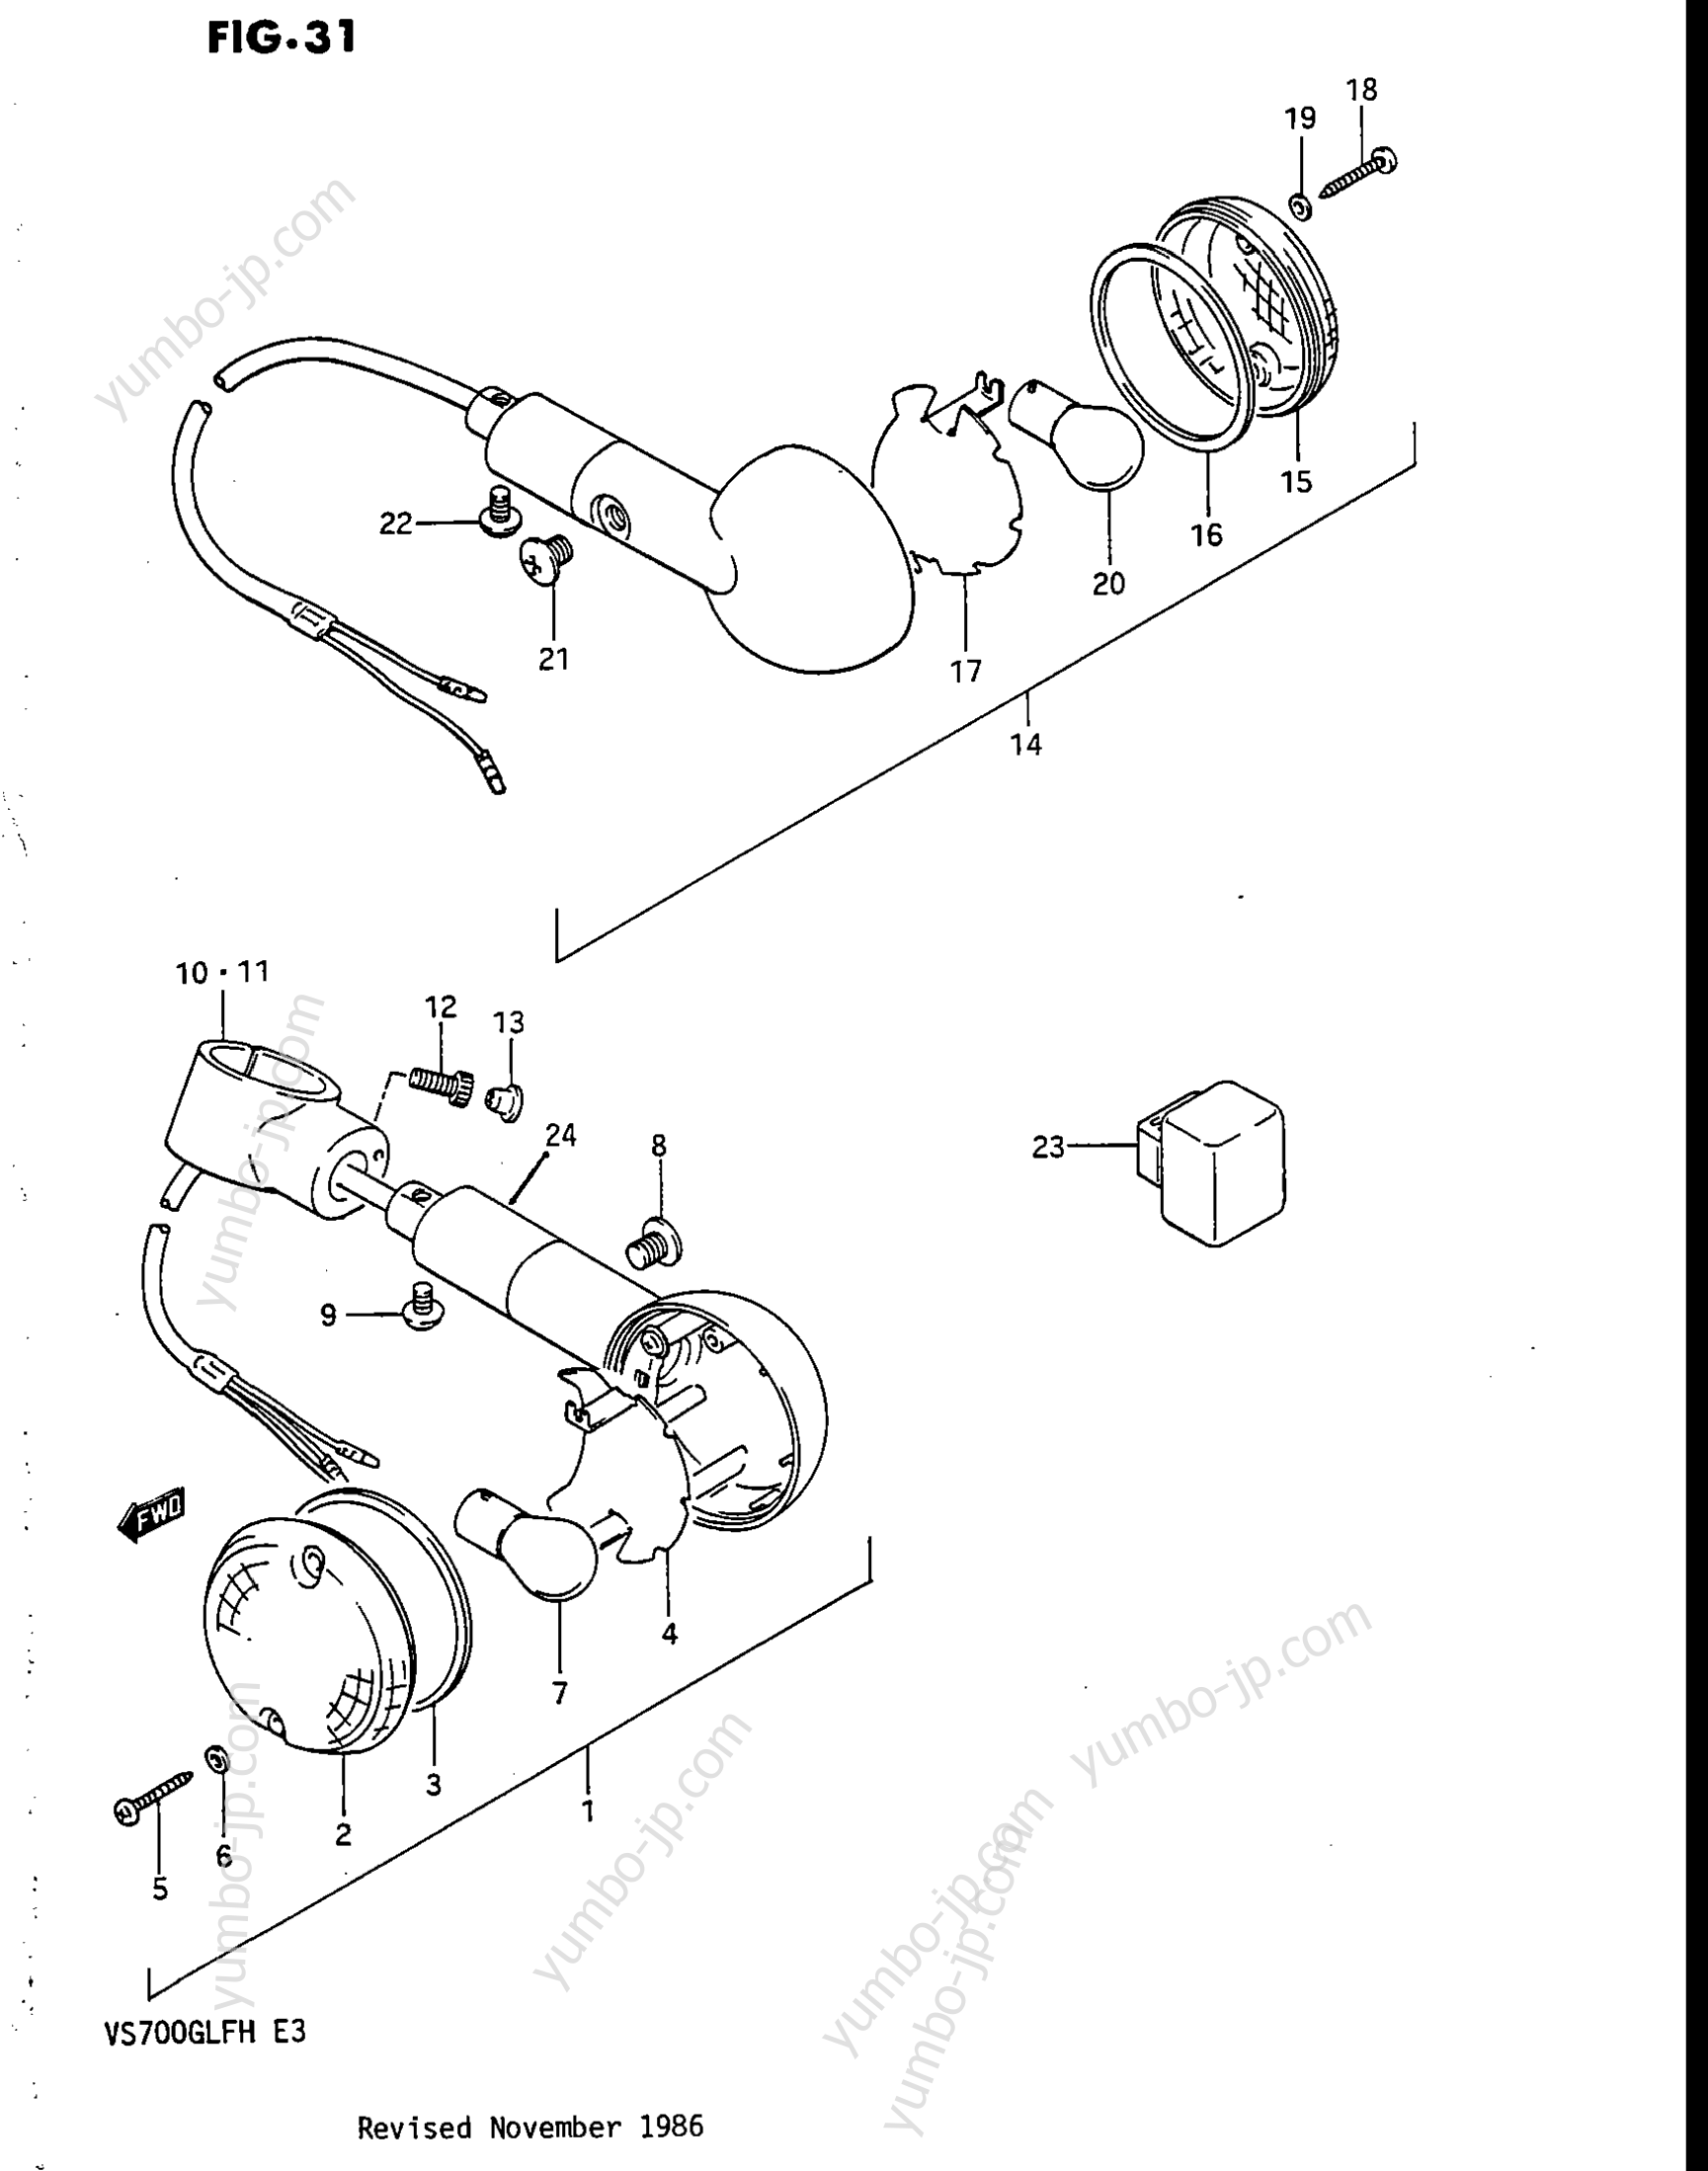 TURN SIGNAL LAMP для мотоциклов SUZUKI Intruder (VS700GLEF) 1986 г.